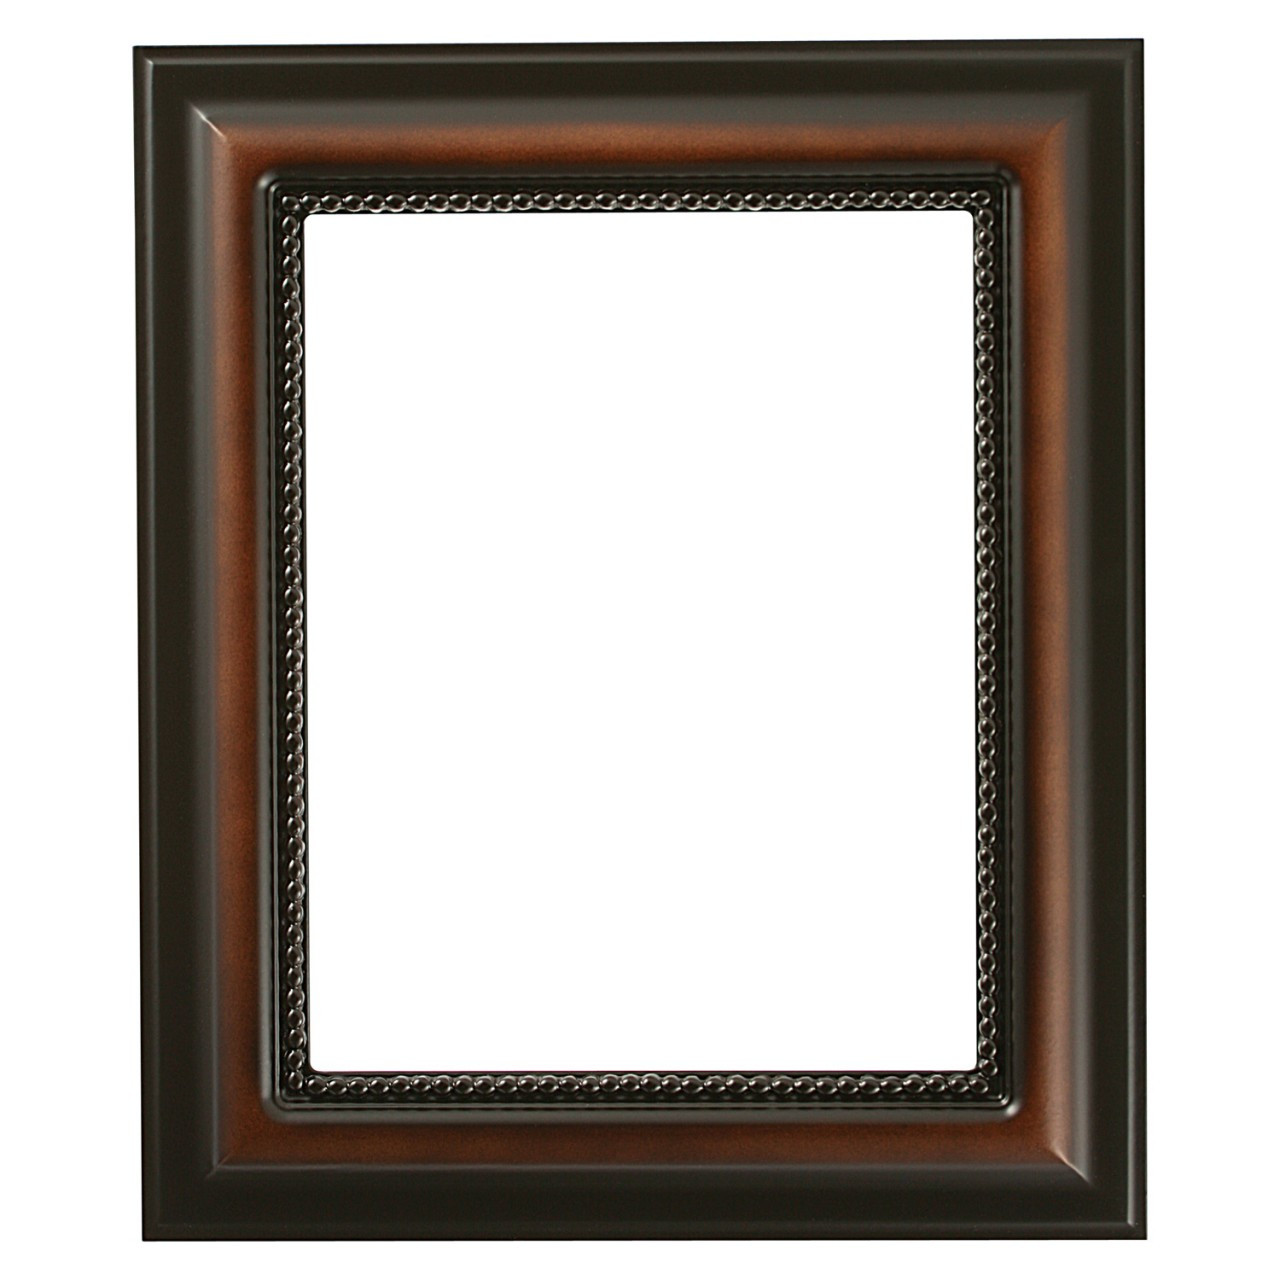 Buy Frame Galant Walnut 30x30 cm here 